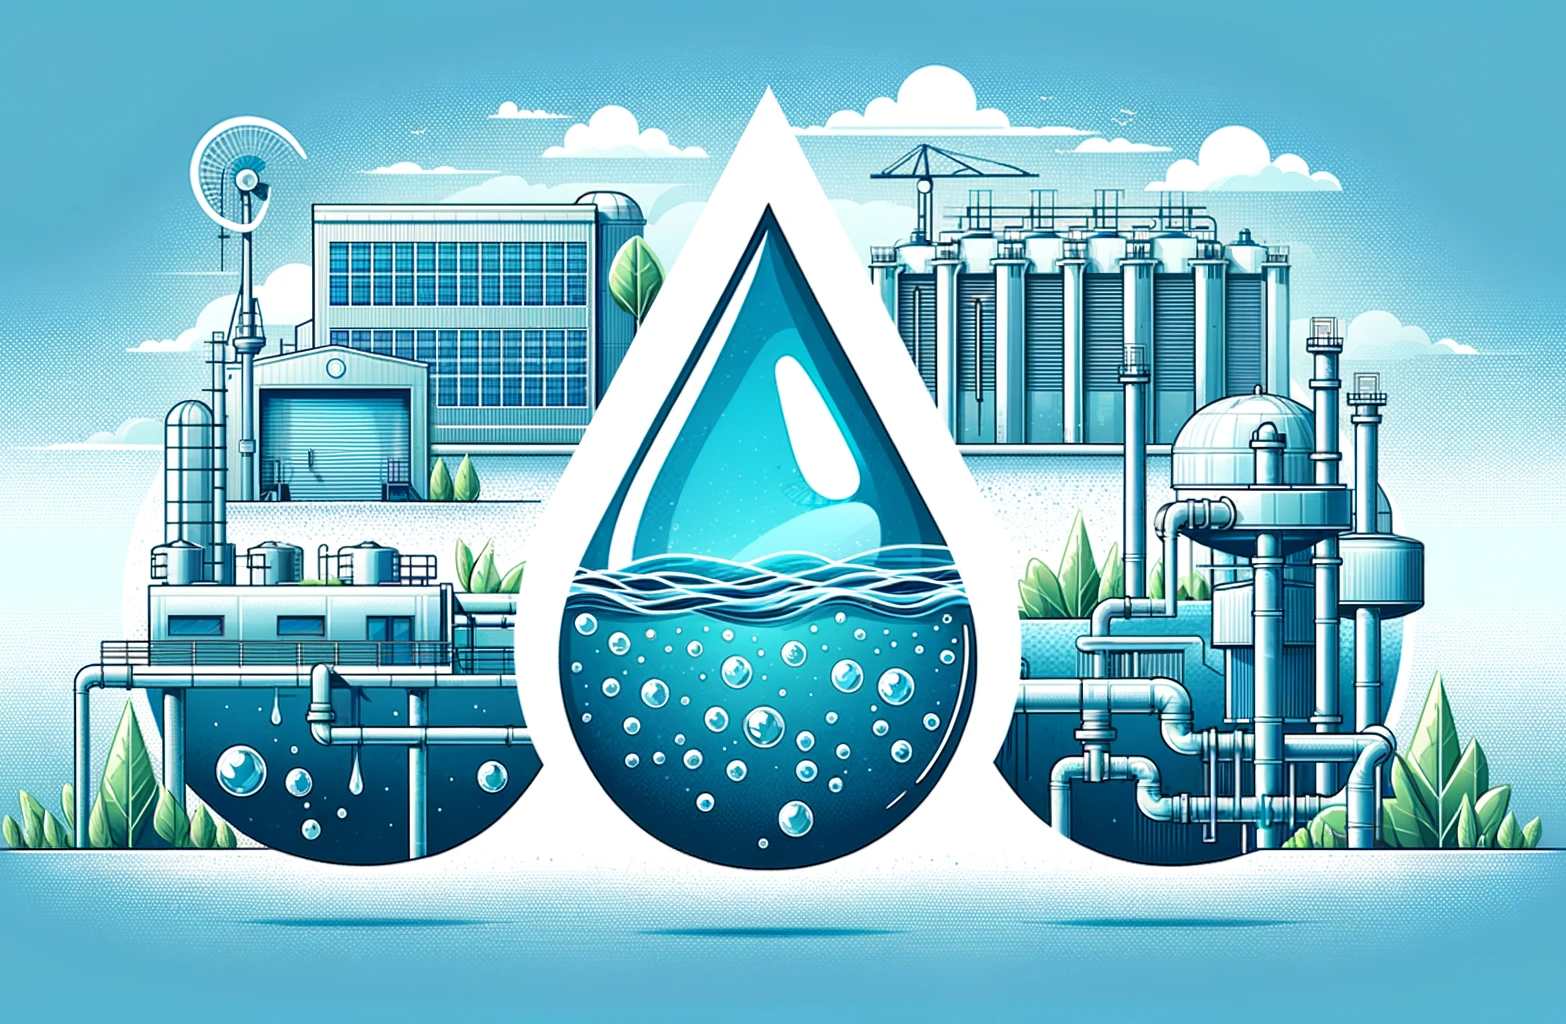 Tại sao xử lý nước thải lại là một vấn đề quan trọng?